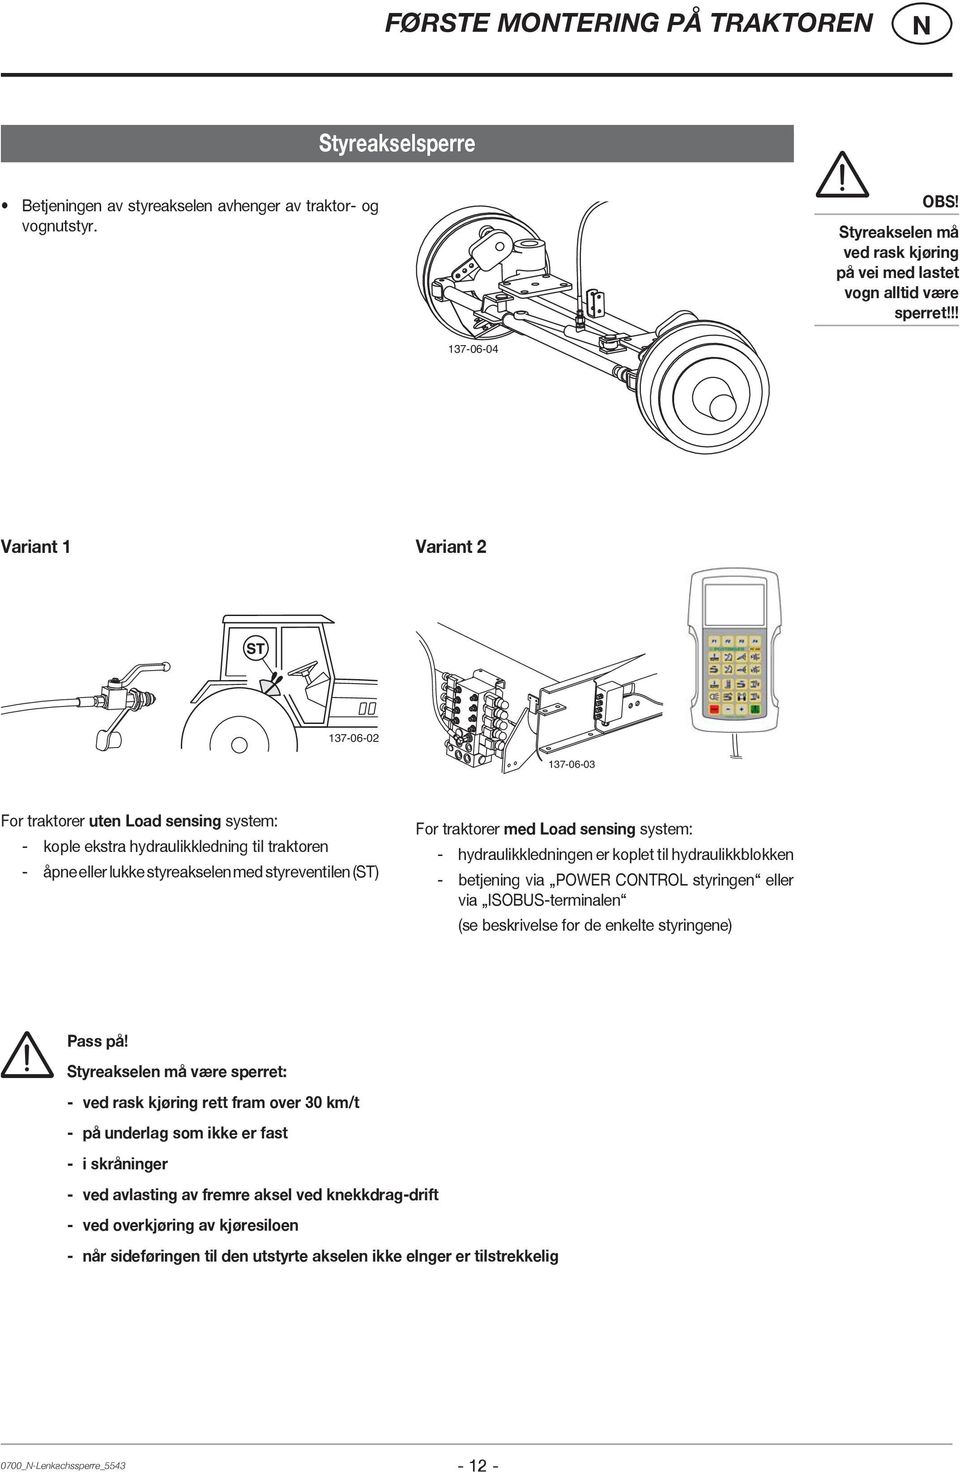 traktorer med Load sensing system: - hydraulikkledningen er koplet til hydraulikkblokken - betjening via POWER COTROL styringen eller via ISOBUS-terminalen (se beskrivelse for de enkelte styringene)